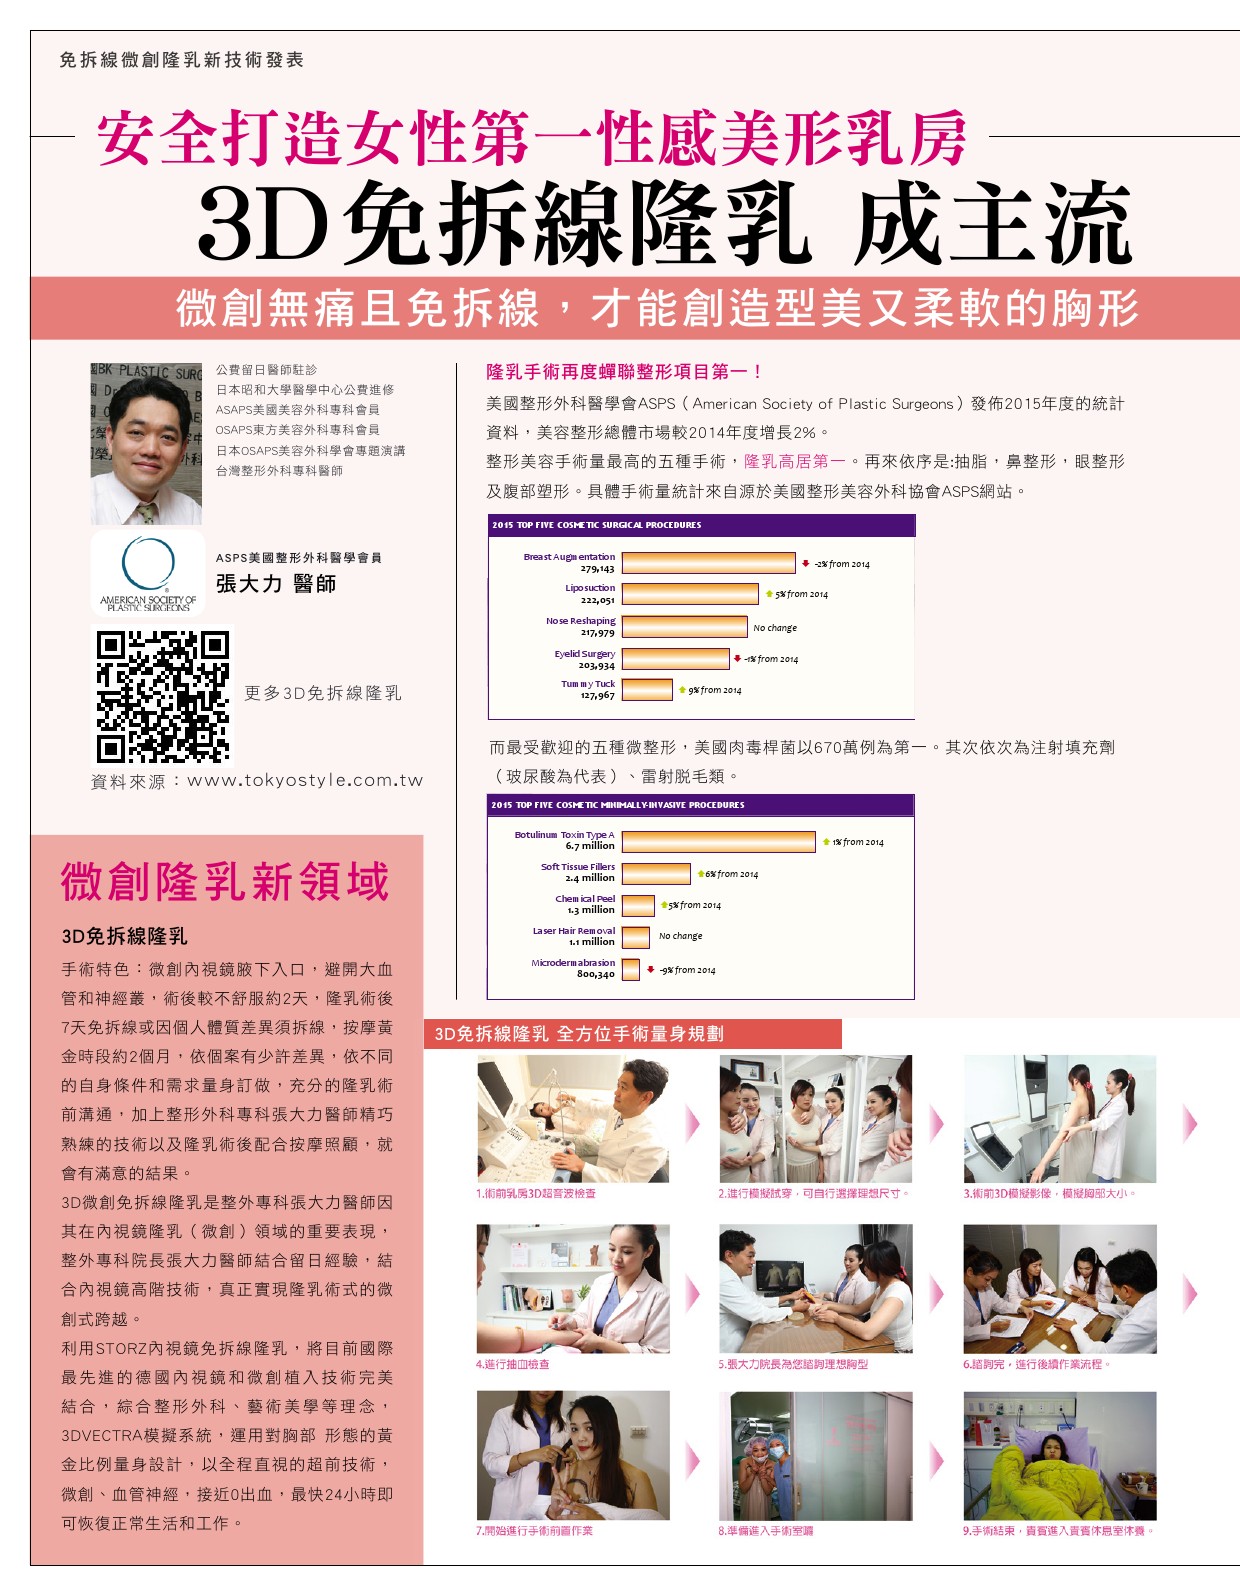 3D免拆線隆乳成主流 安全打造美型乳房-雜誌專訪-張大力-整形名醫-東京風采